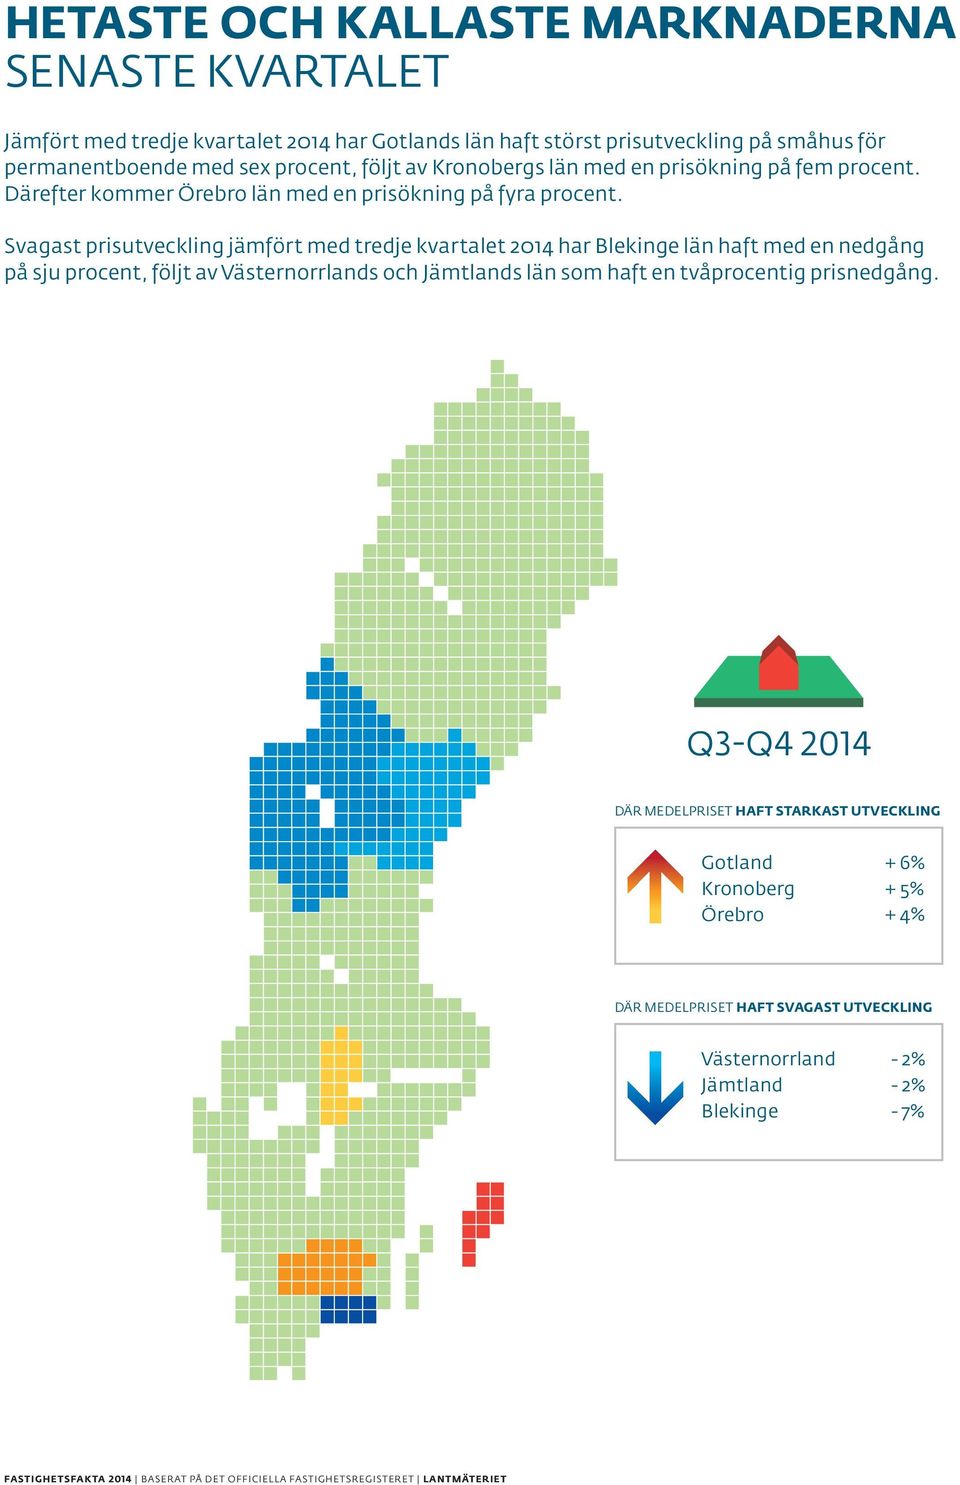 Svagast prisutveckling jämfört med tredje kvartalet 2014 har Blekinge län haft med en nedgång på sju procent, följt av Västernorrlands och Jämtlands län som haft en tvåprocentig